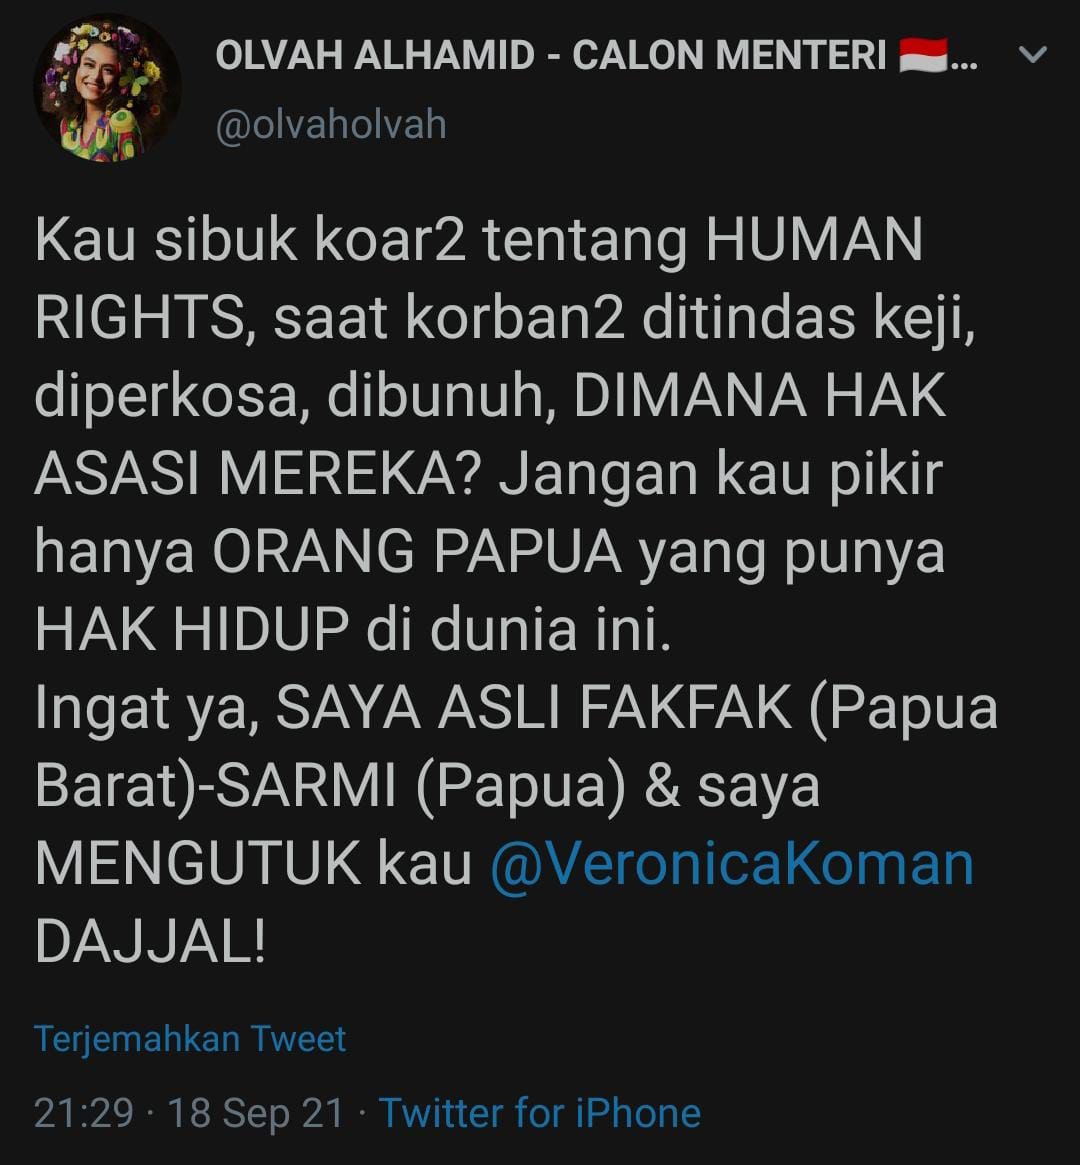 Cuitan OLVAH ALHAMID di Twitter yang mengecam Veronica Koman